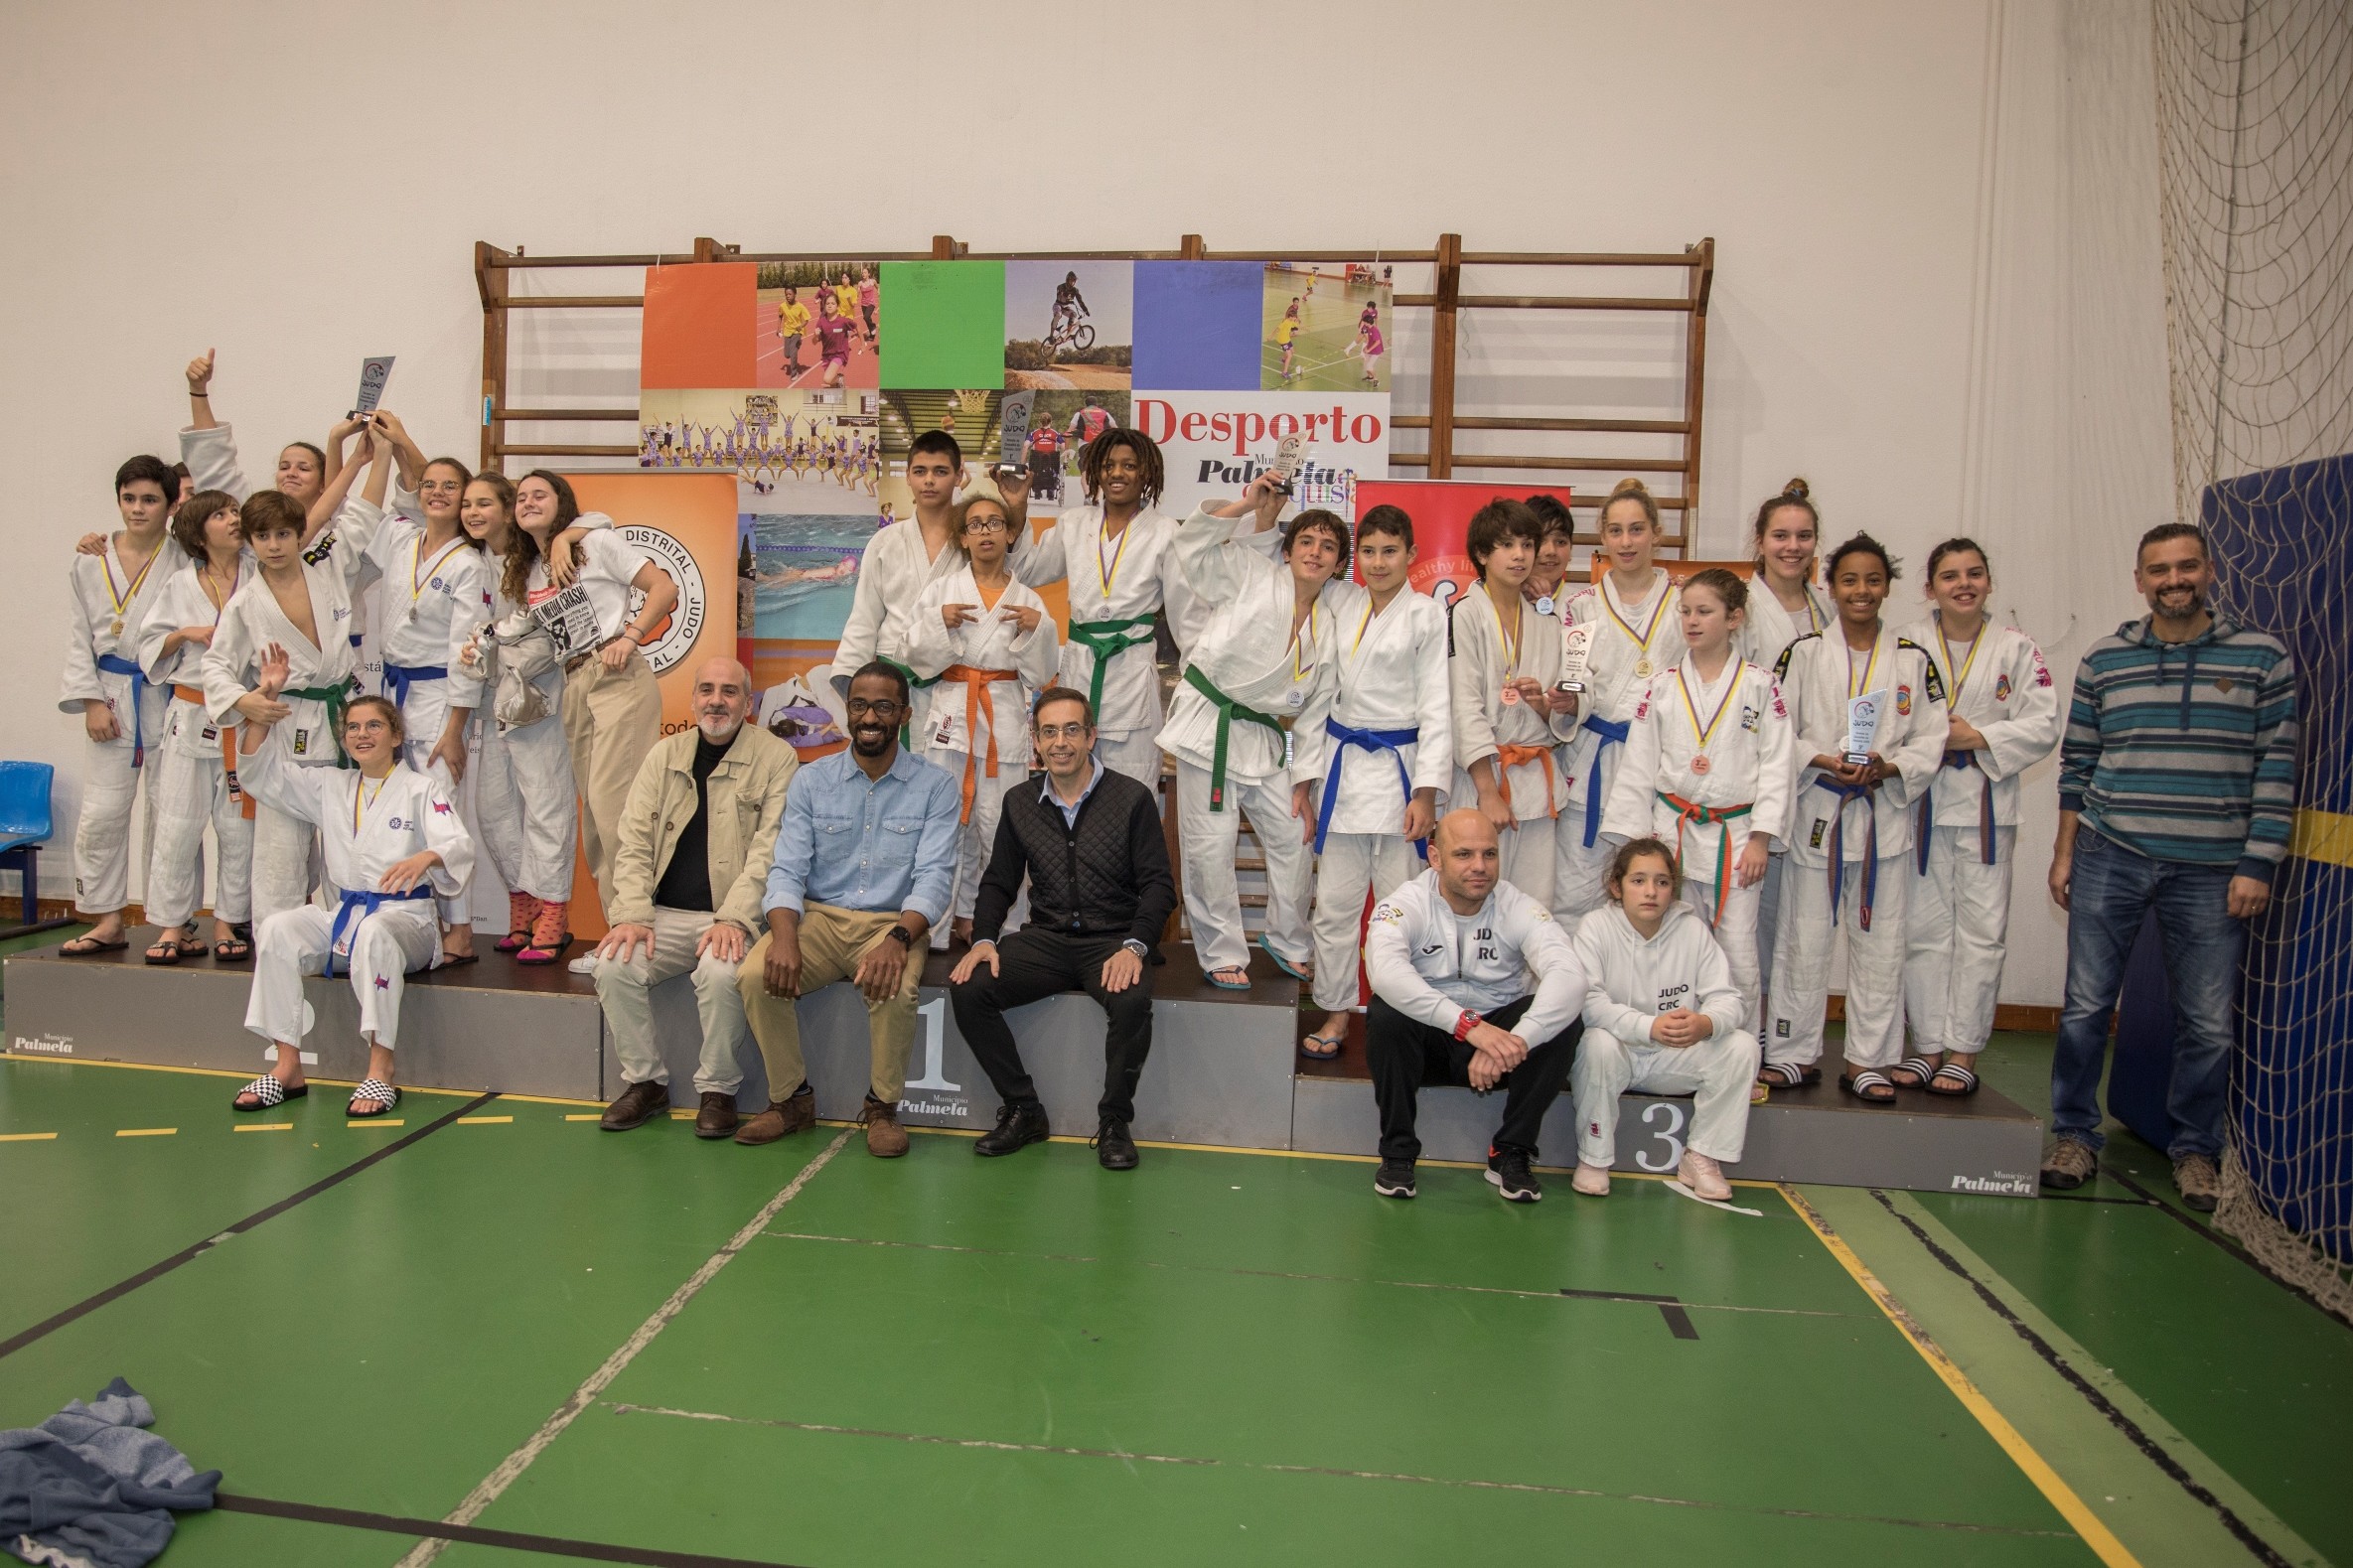 “Open de Juvenis” juntou judocas de todo o país em Pinhal Novo